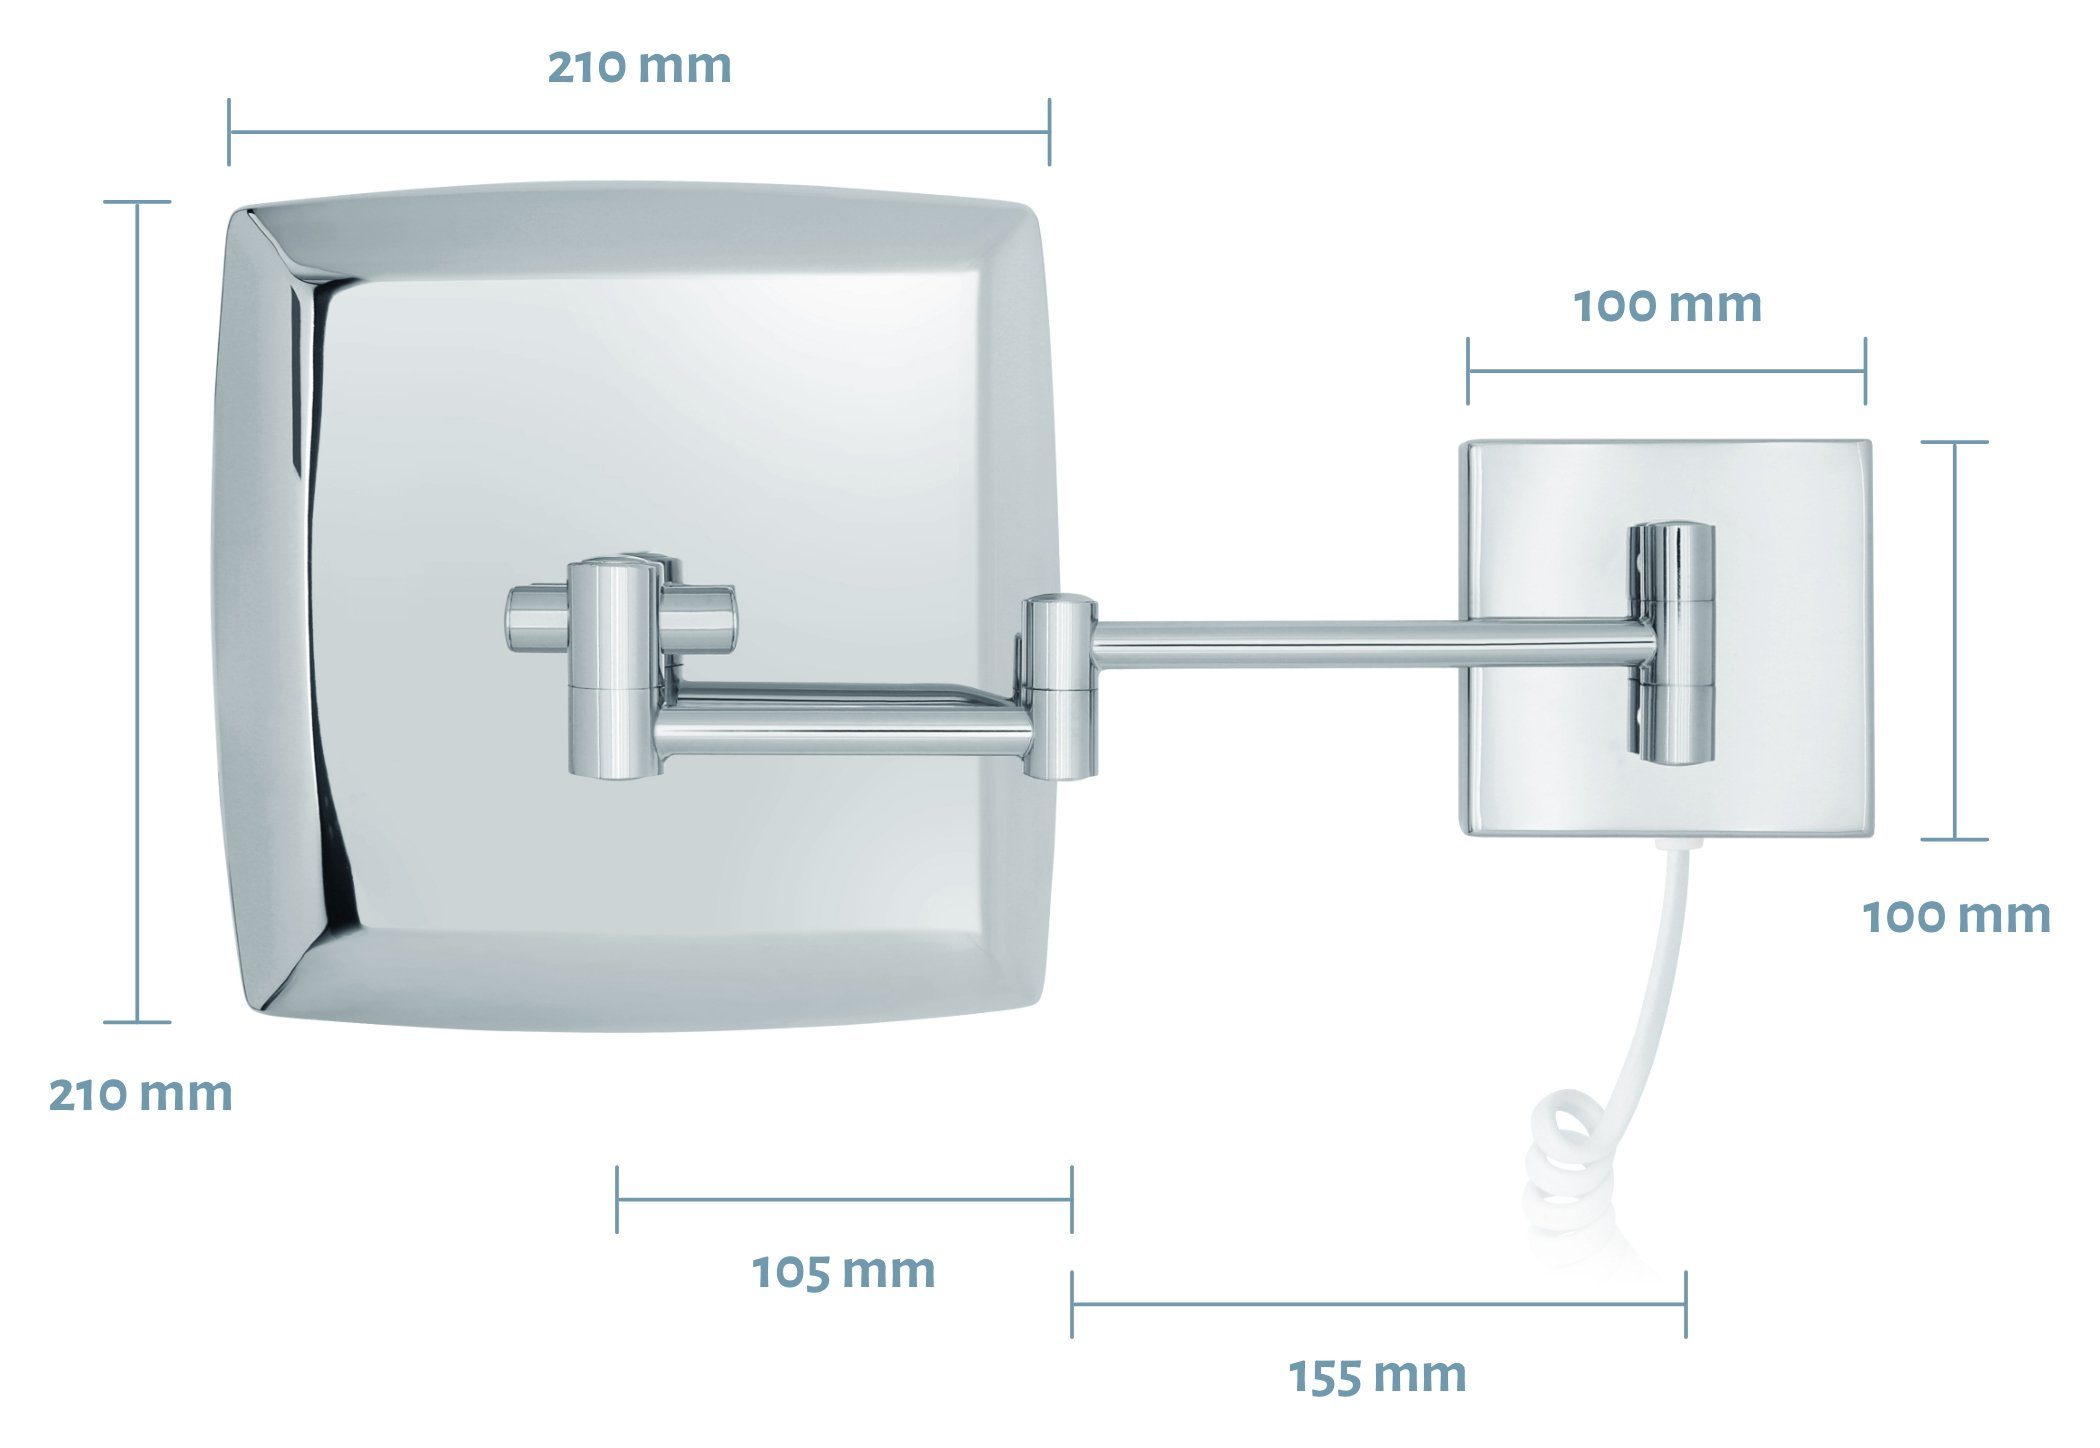 Sensor Vergrößerungsspiegel 5fach Kosmetikspiegel Kosmetikspiegel Verona, LED Kabel weißes Libaro